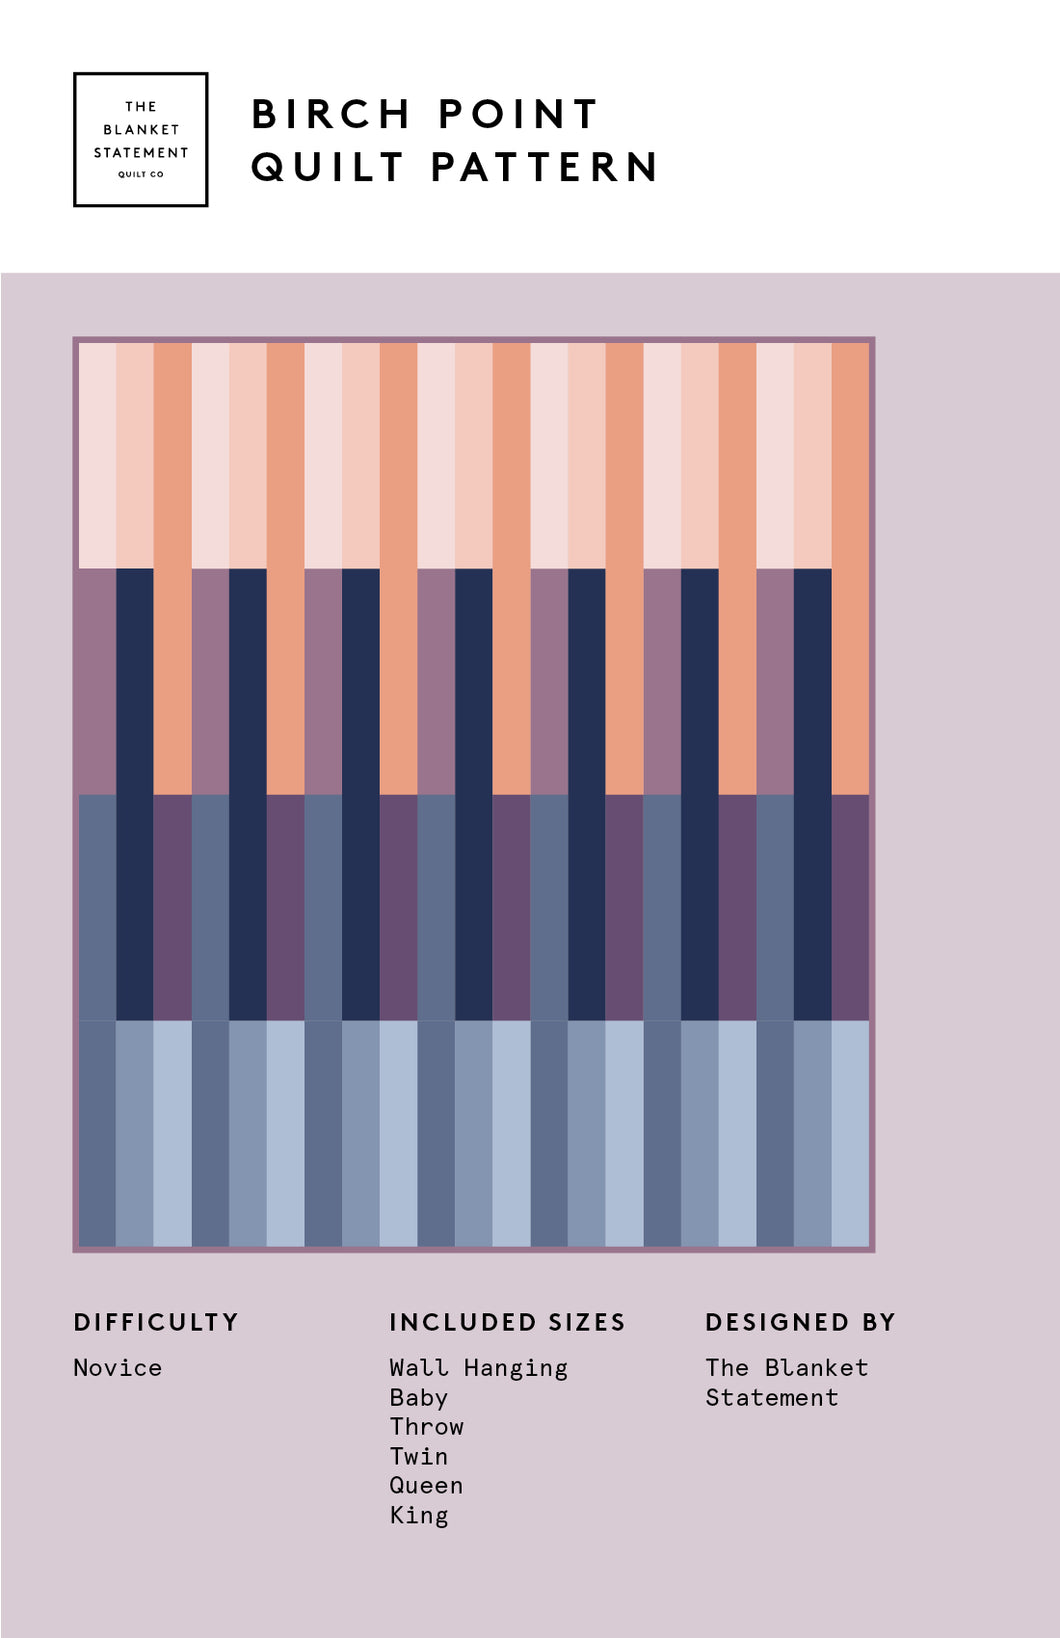 The Blanket Statement - Birch Point Quilt Pattern